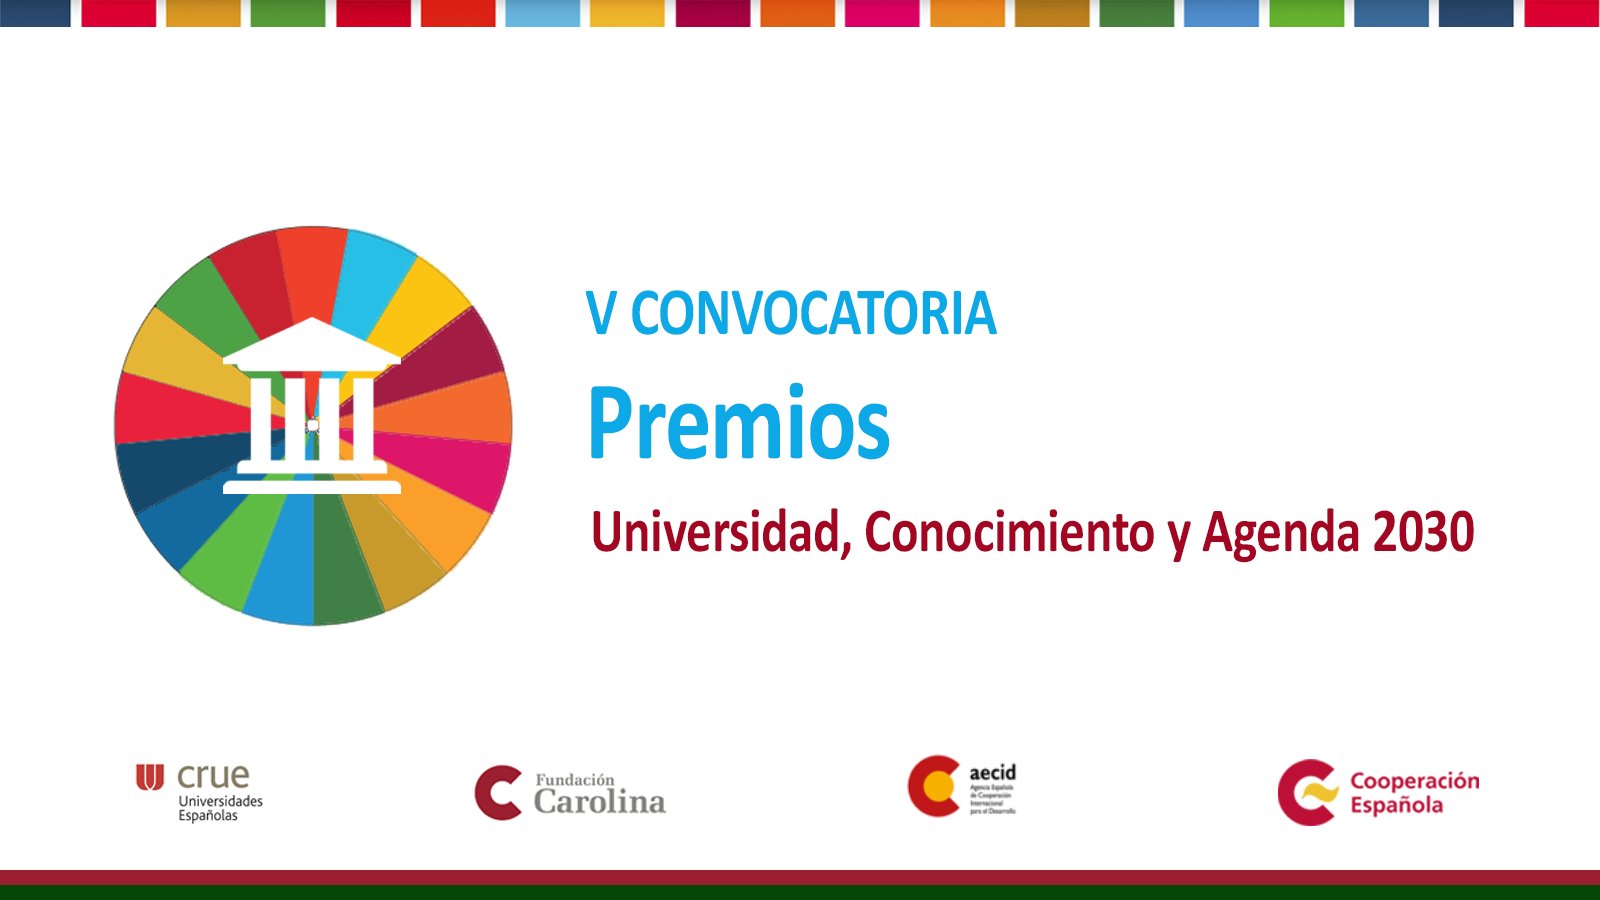 V Convocatoria Premios Universidad, Conocimiento y Agenda 2030